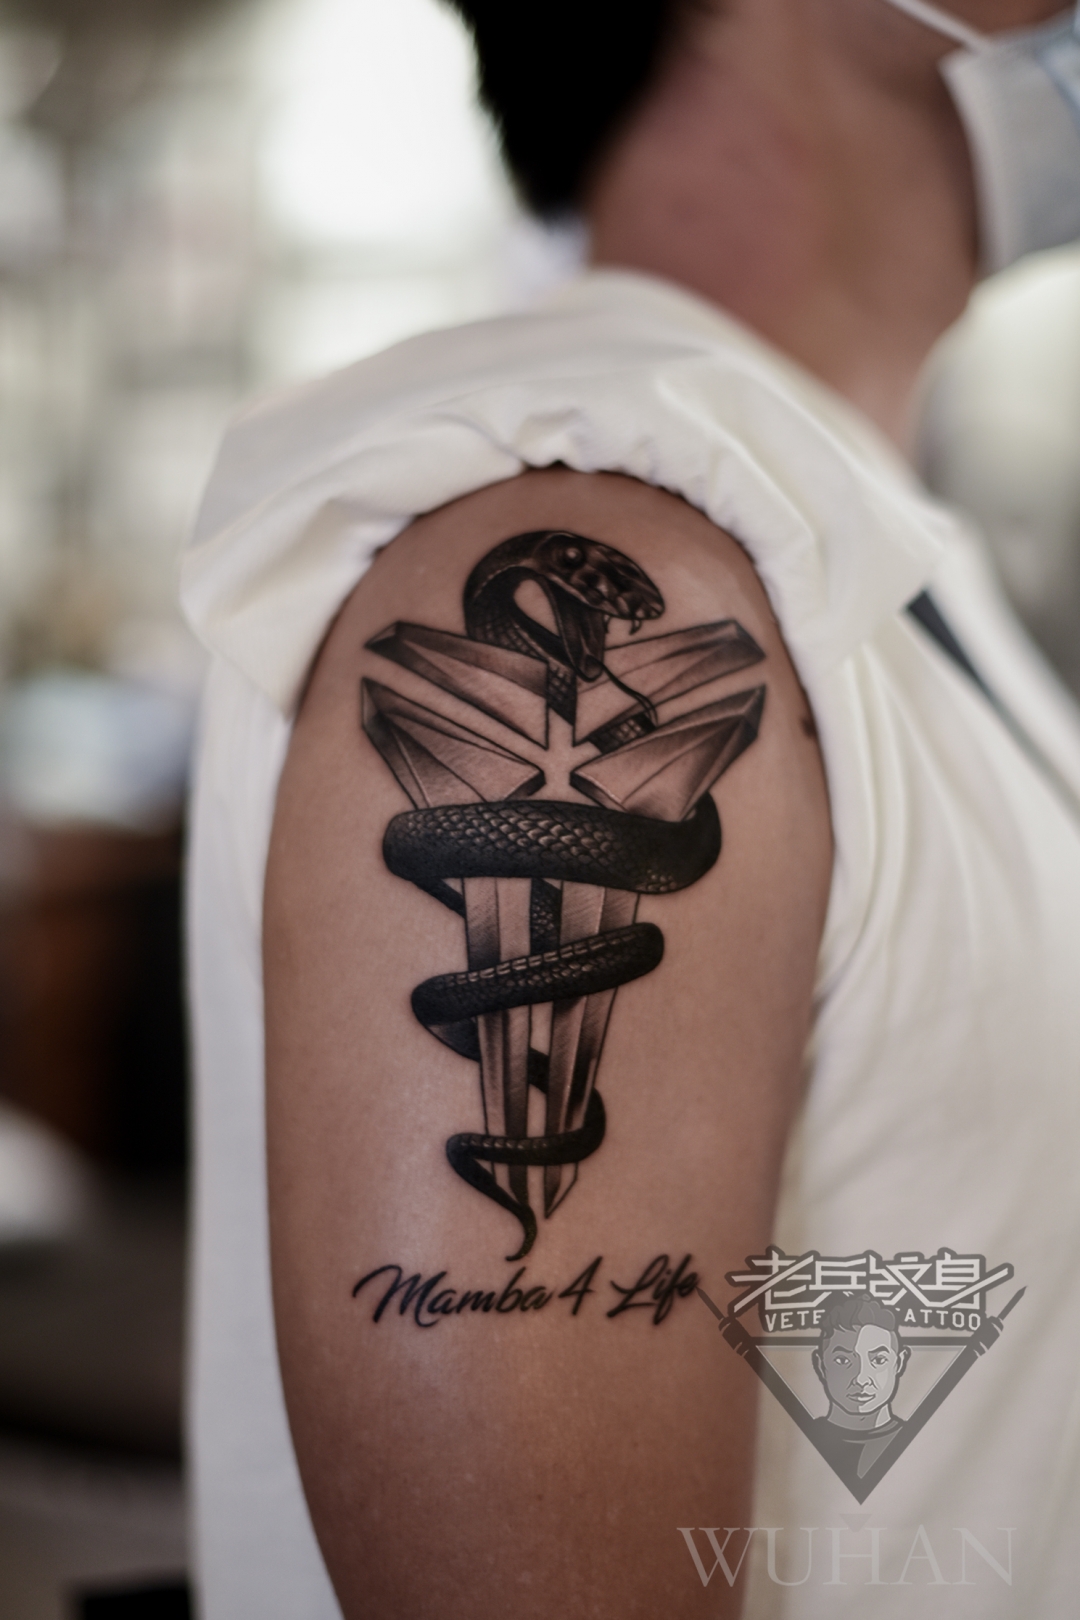 大臂代表乔丹精神的黑曼巴纹身作品